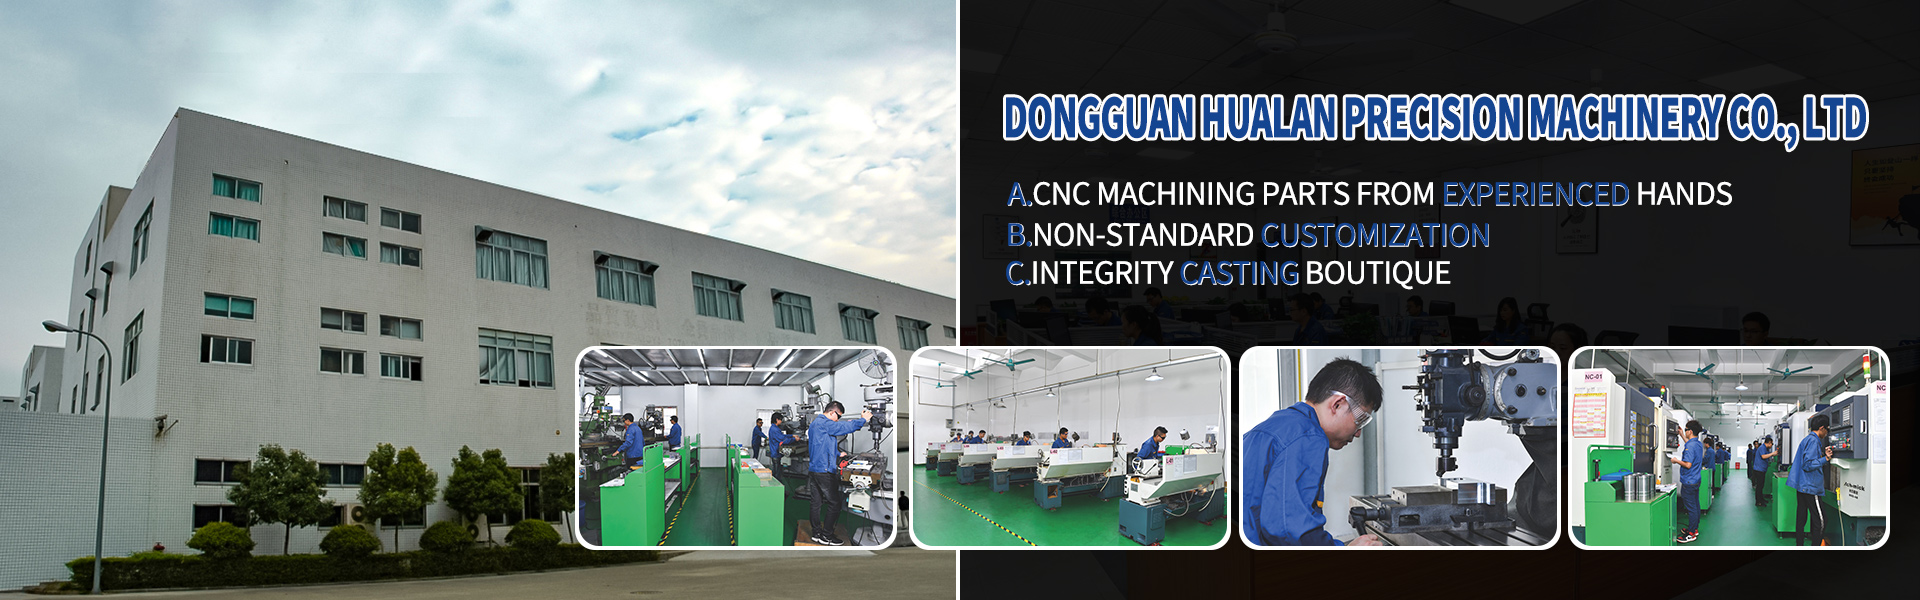 Части обработки ЧПУ, Тьюринг и фрезерование, вырезание линии,Dongguan Hualan Precision Machinery Co., LTD